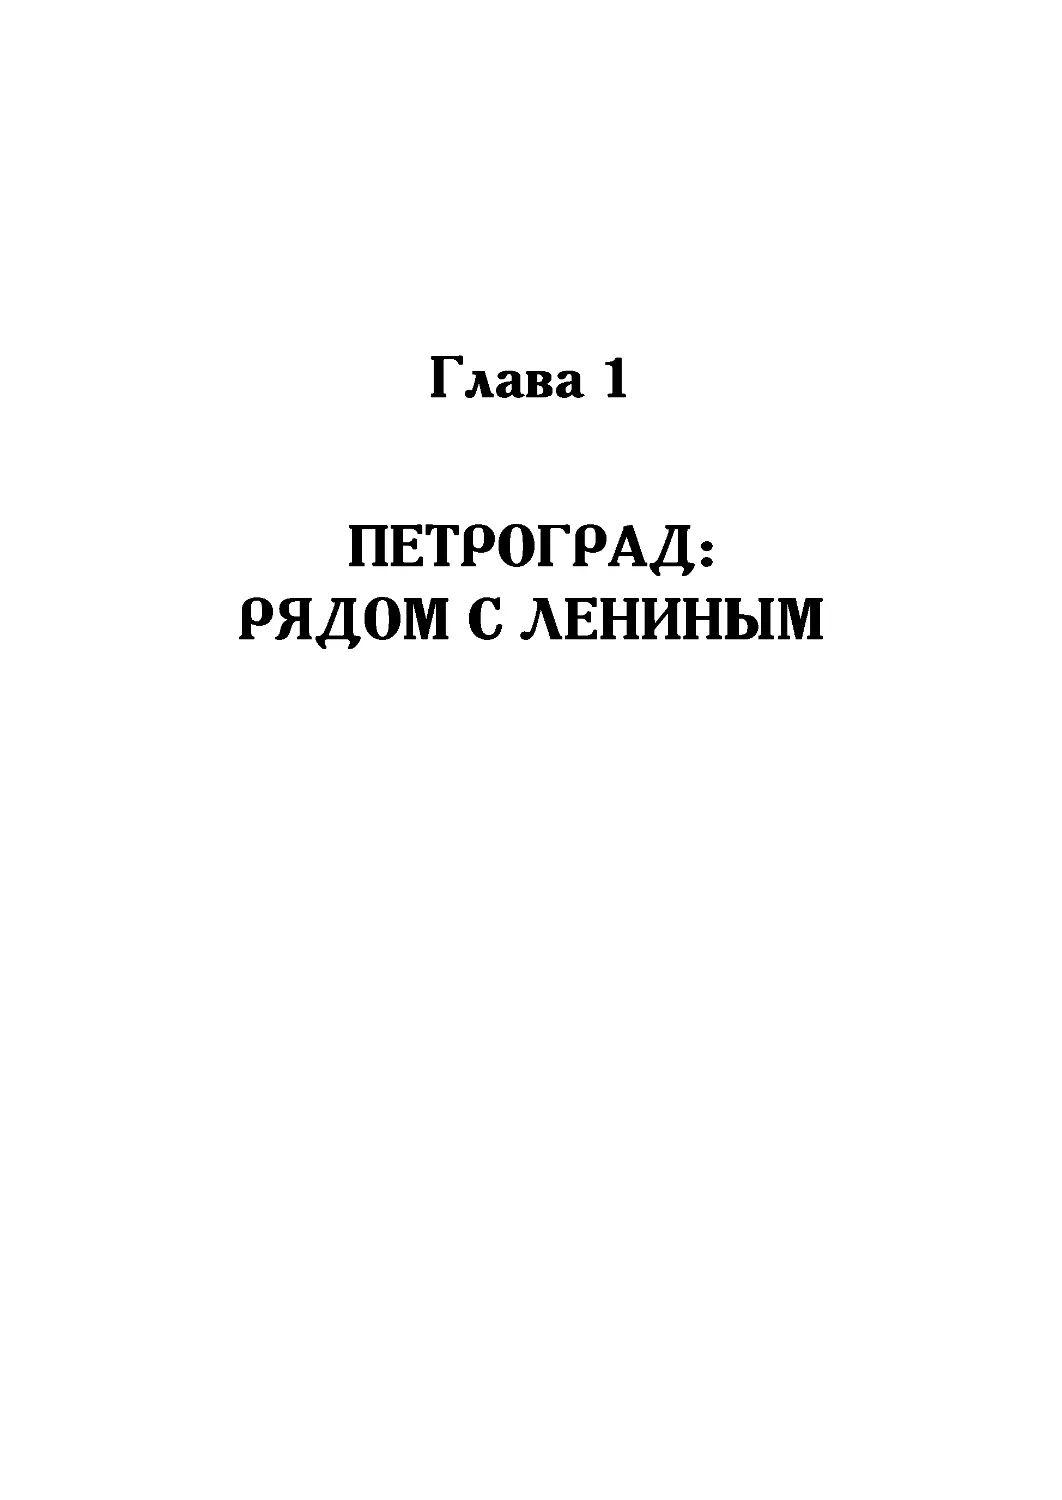 Глава 1. Петроград